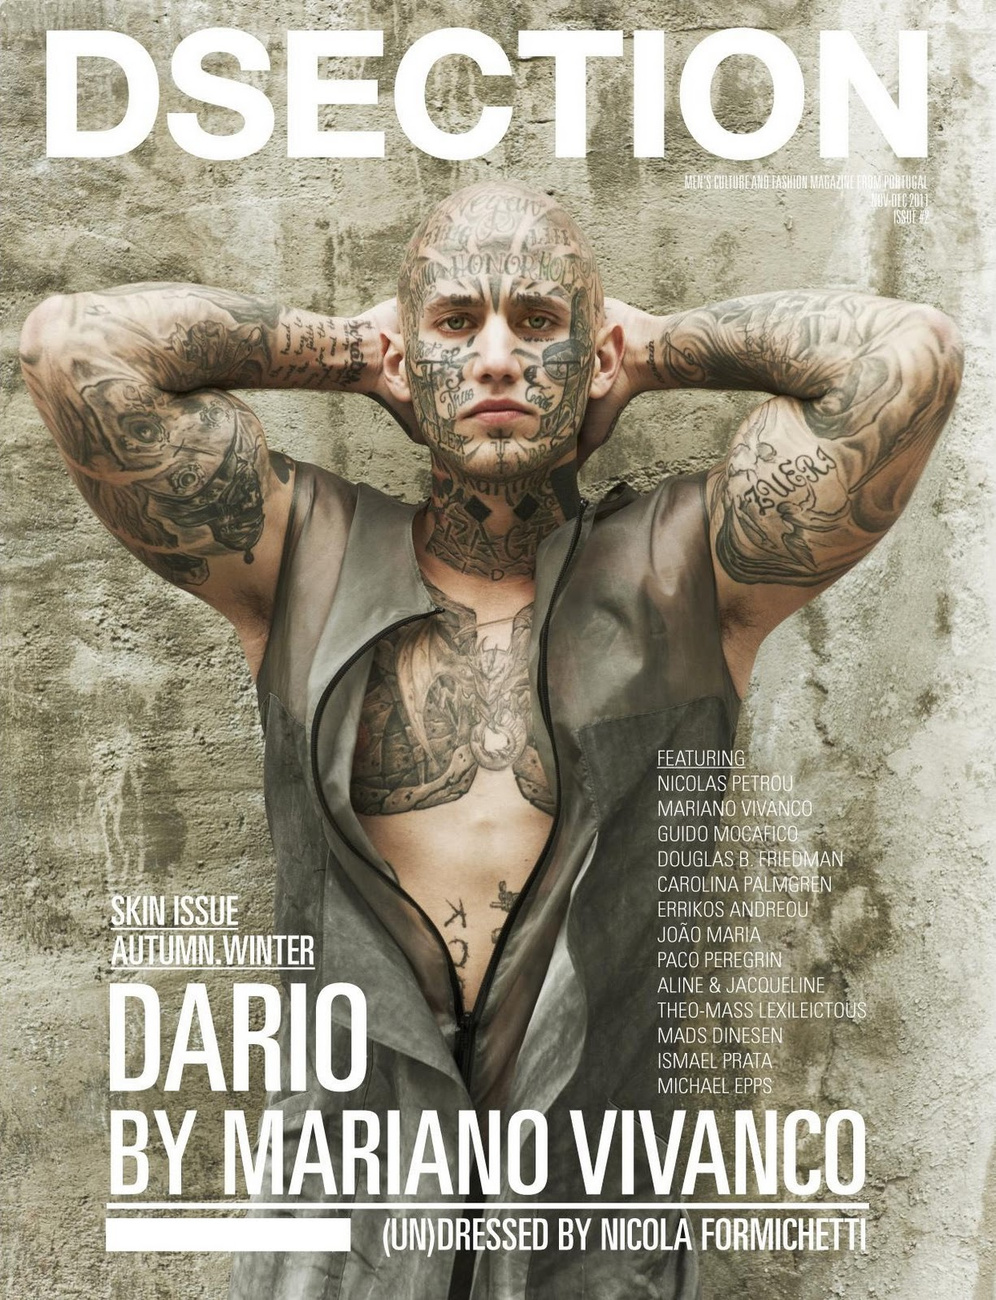 Dario, az év egyik felkapott arctetovált modellje (a másik ugye Rick Genest) a DSECTION című magazin címlapján. A fotós Mariano Vivanco volt